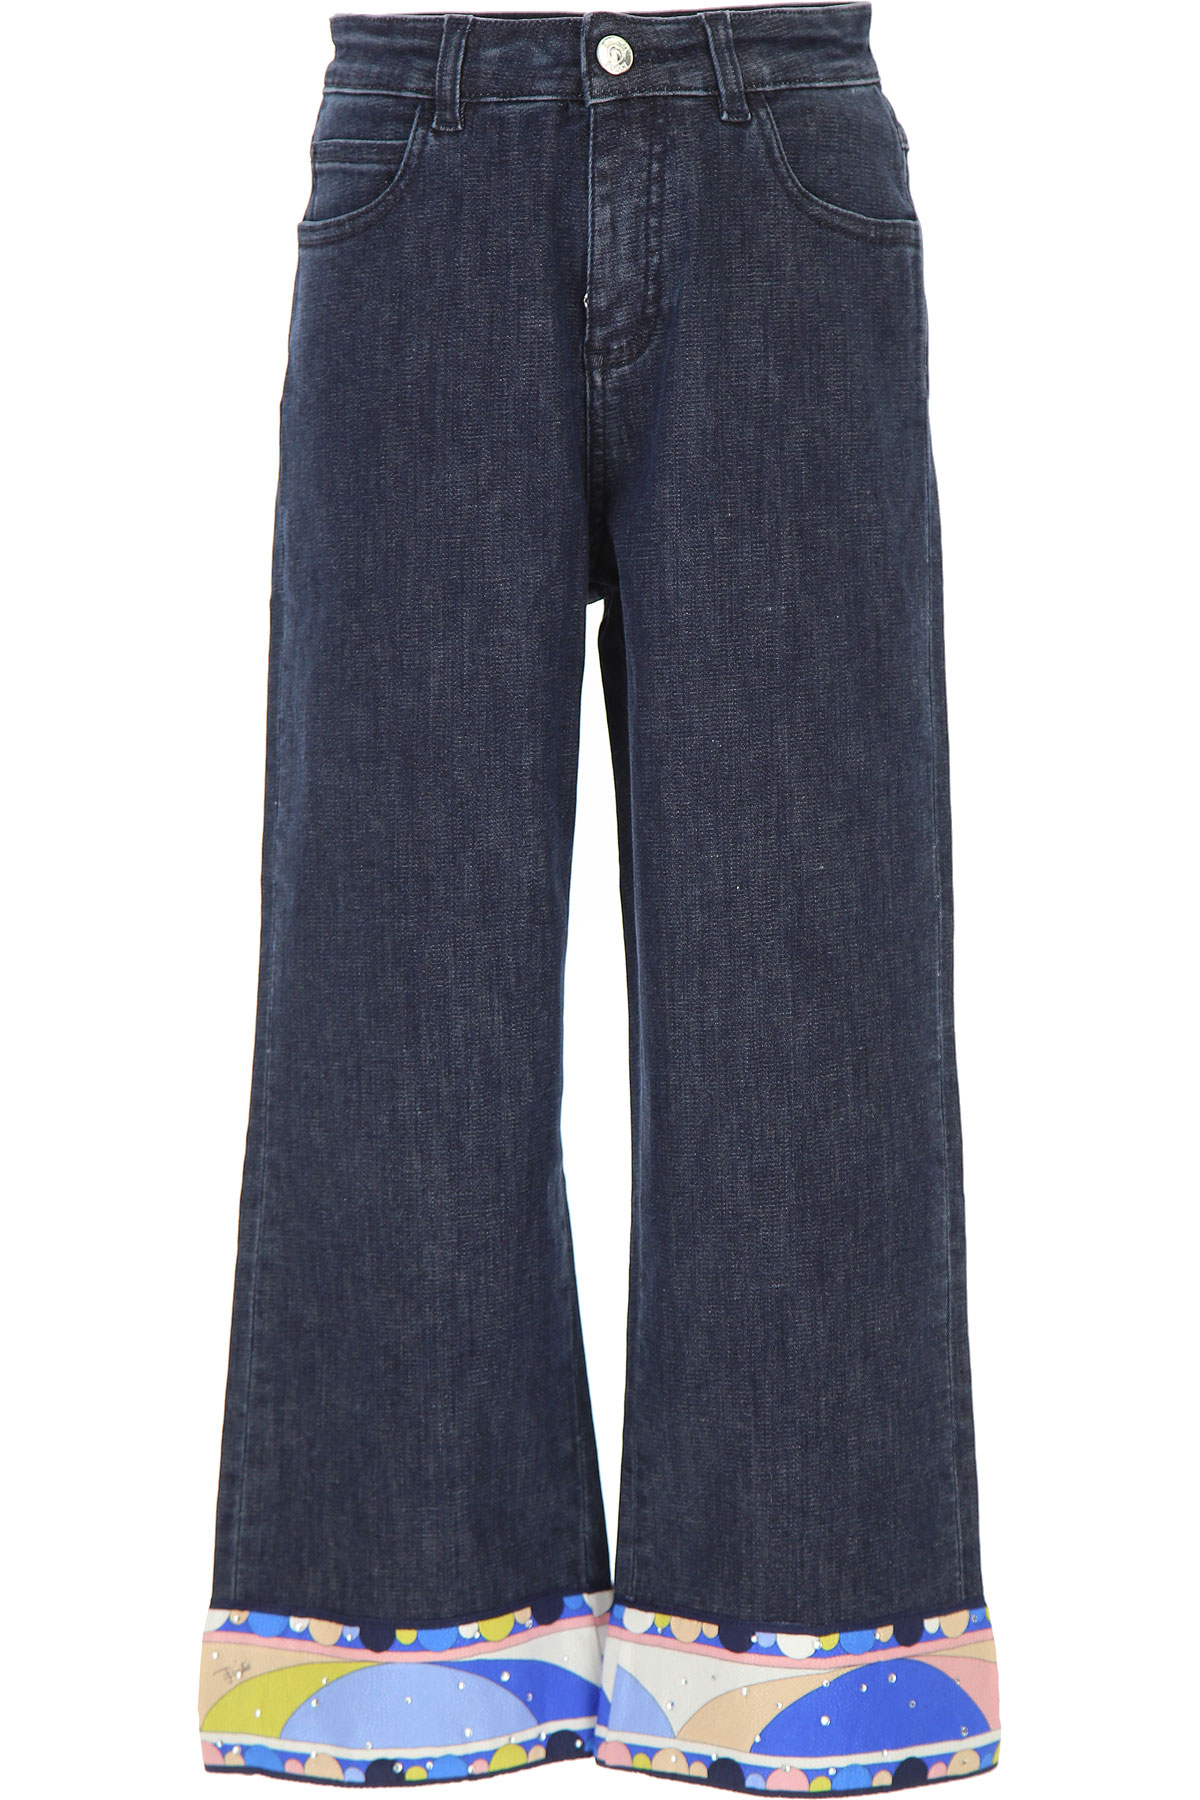 Emilio Pucci Kinder Jeans für Mädchen Günstig im Sale, Denim- Blau, Baumwolle, 2017, 10Y 12Y 14Y